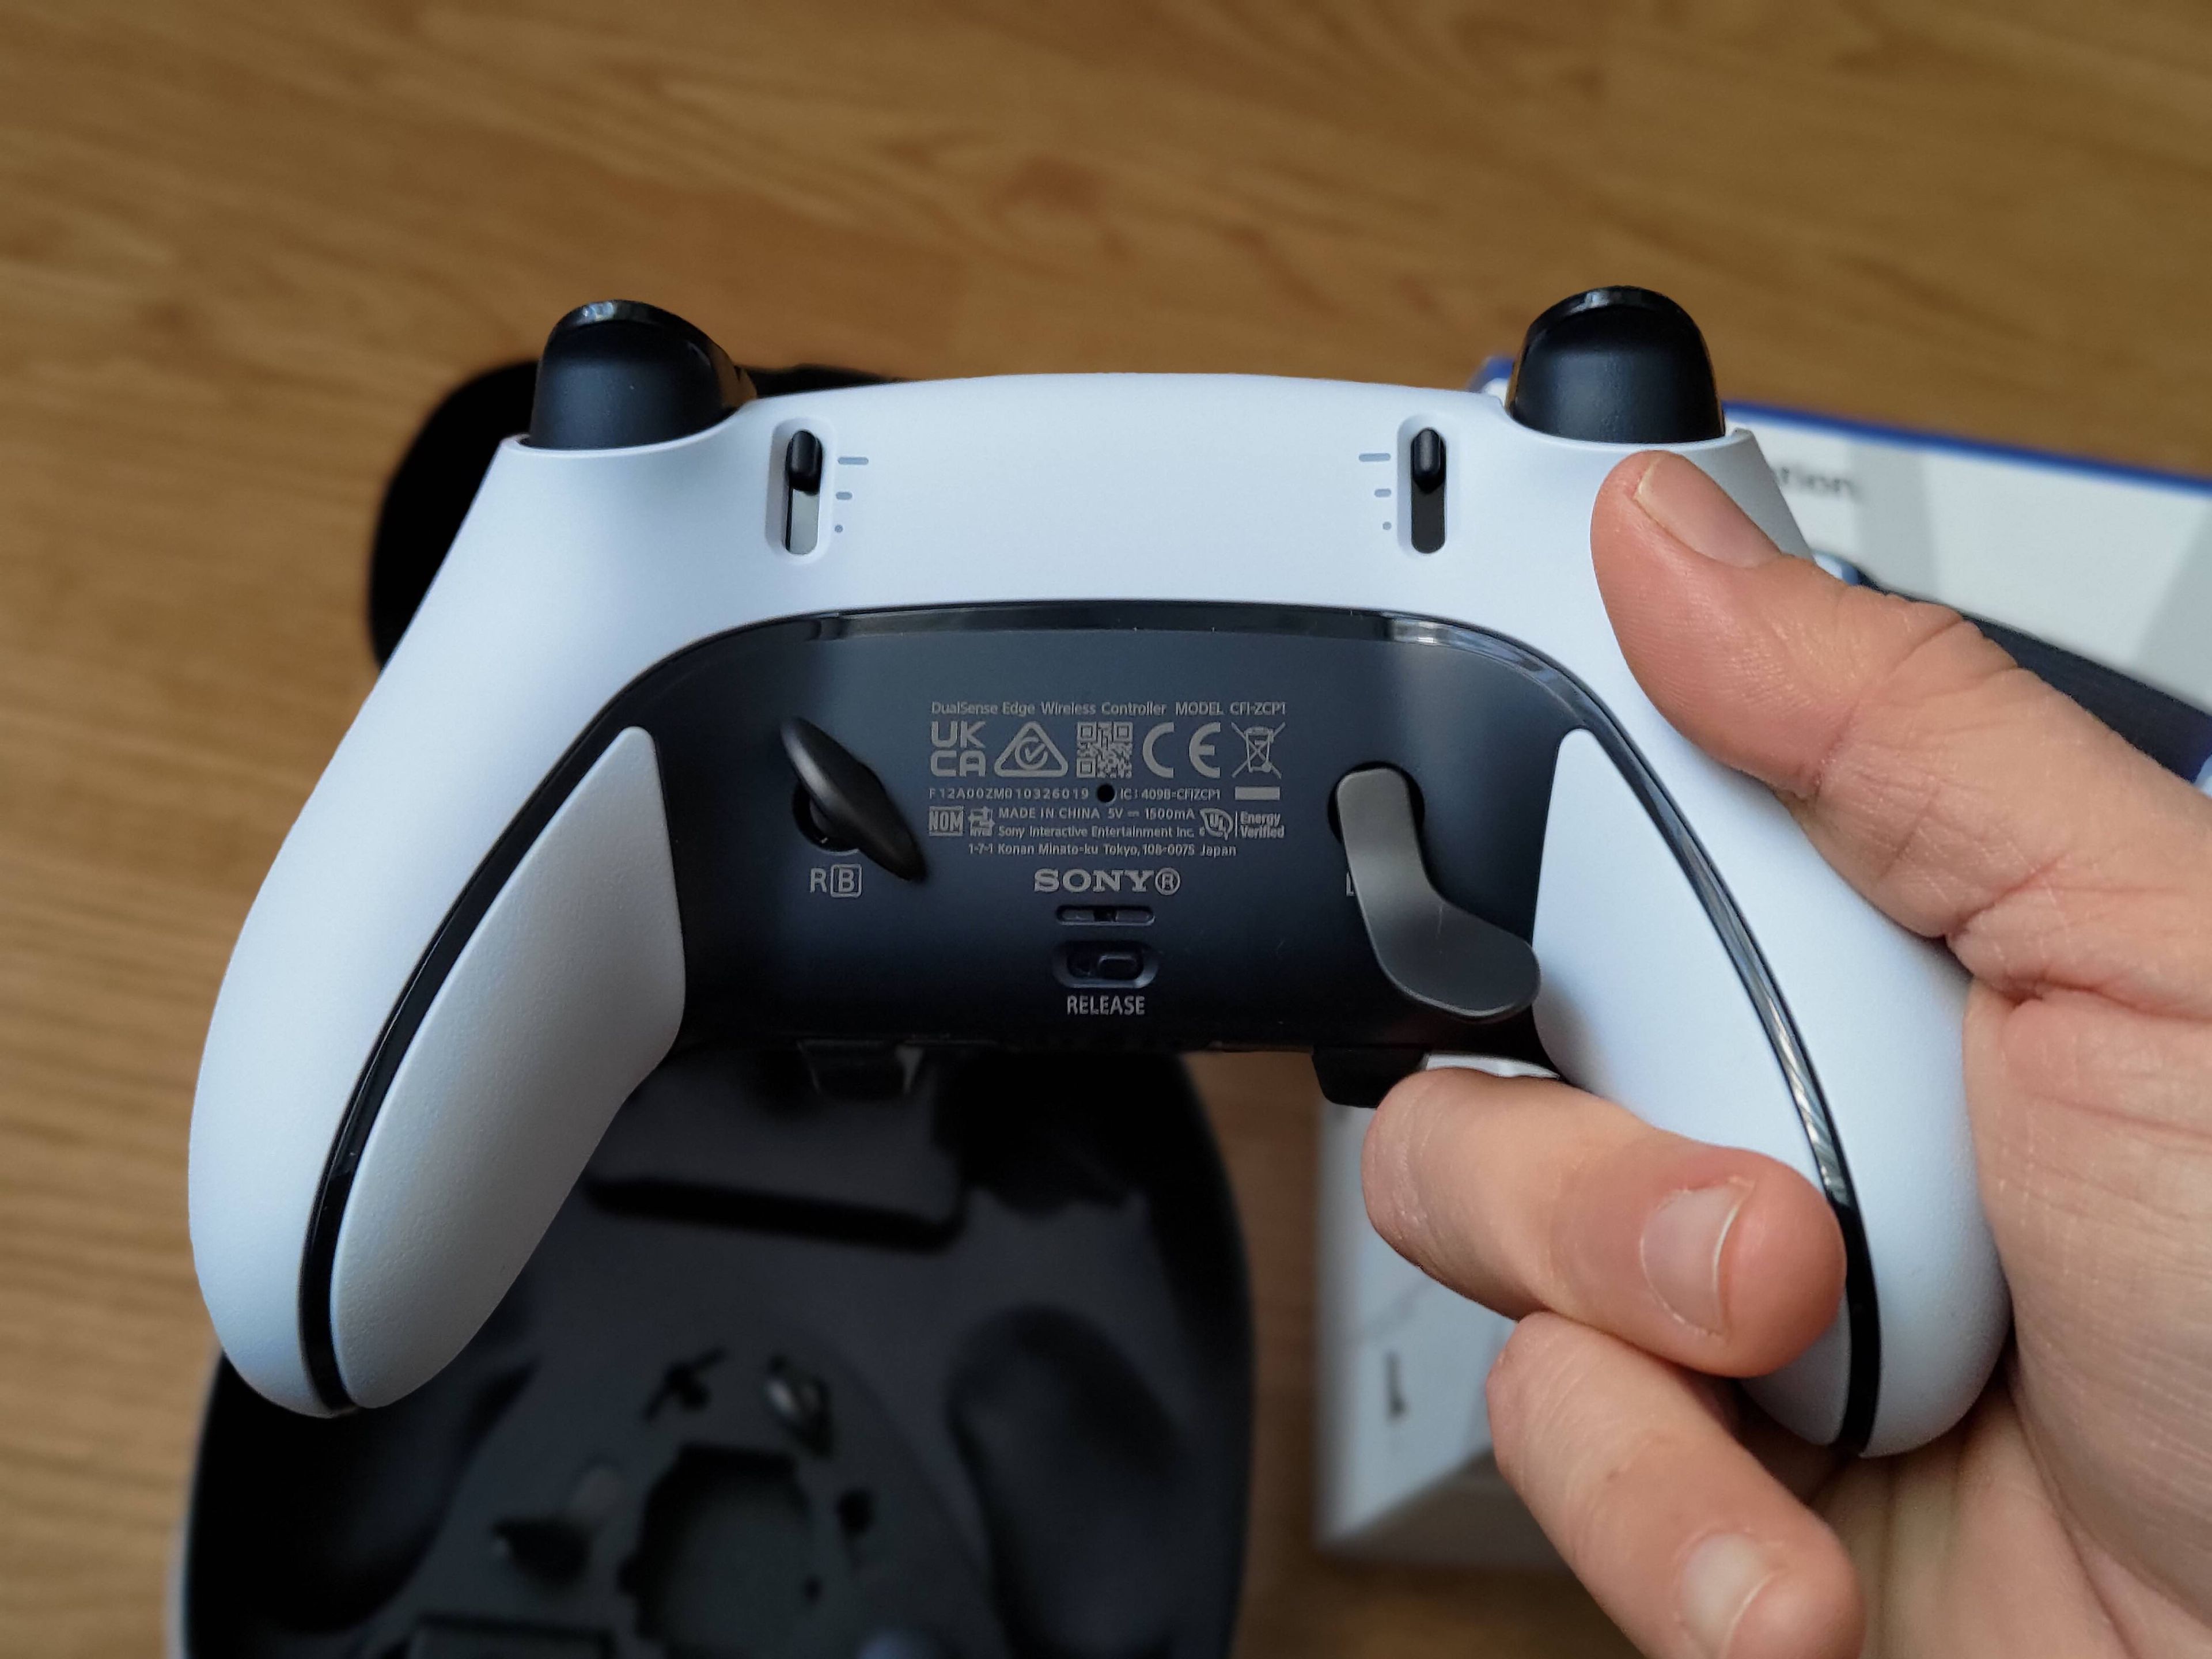 DualSense Edge: analizamos el nuevo mando pro de PS5